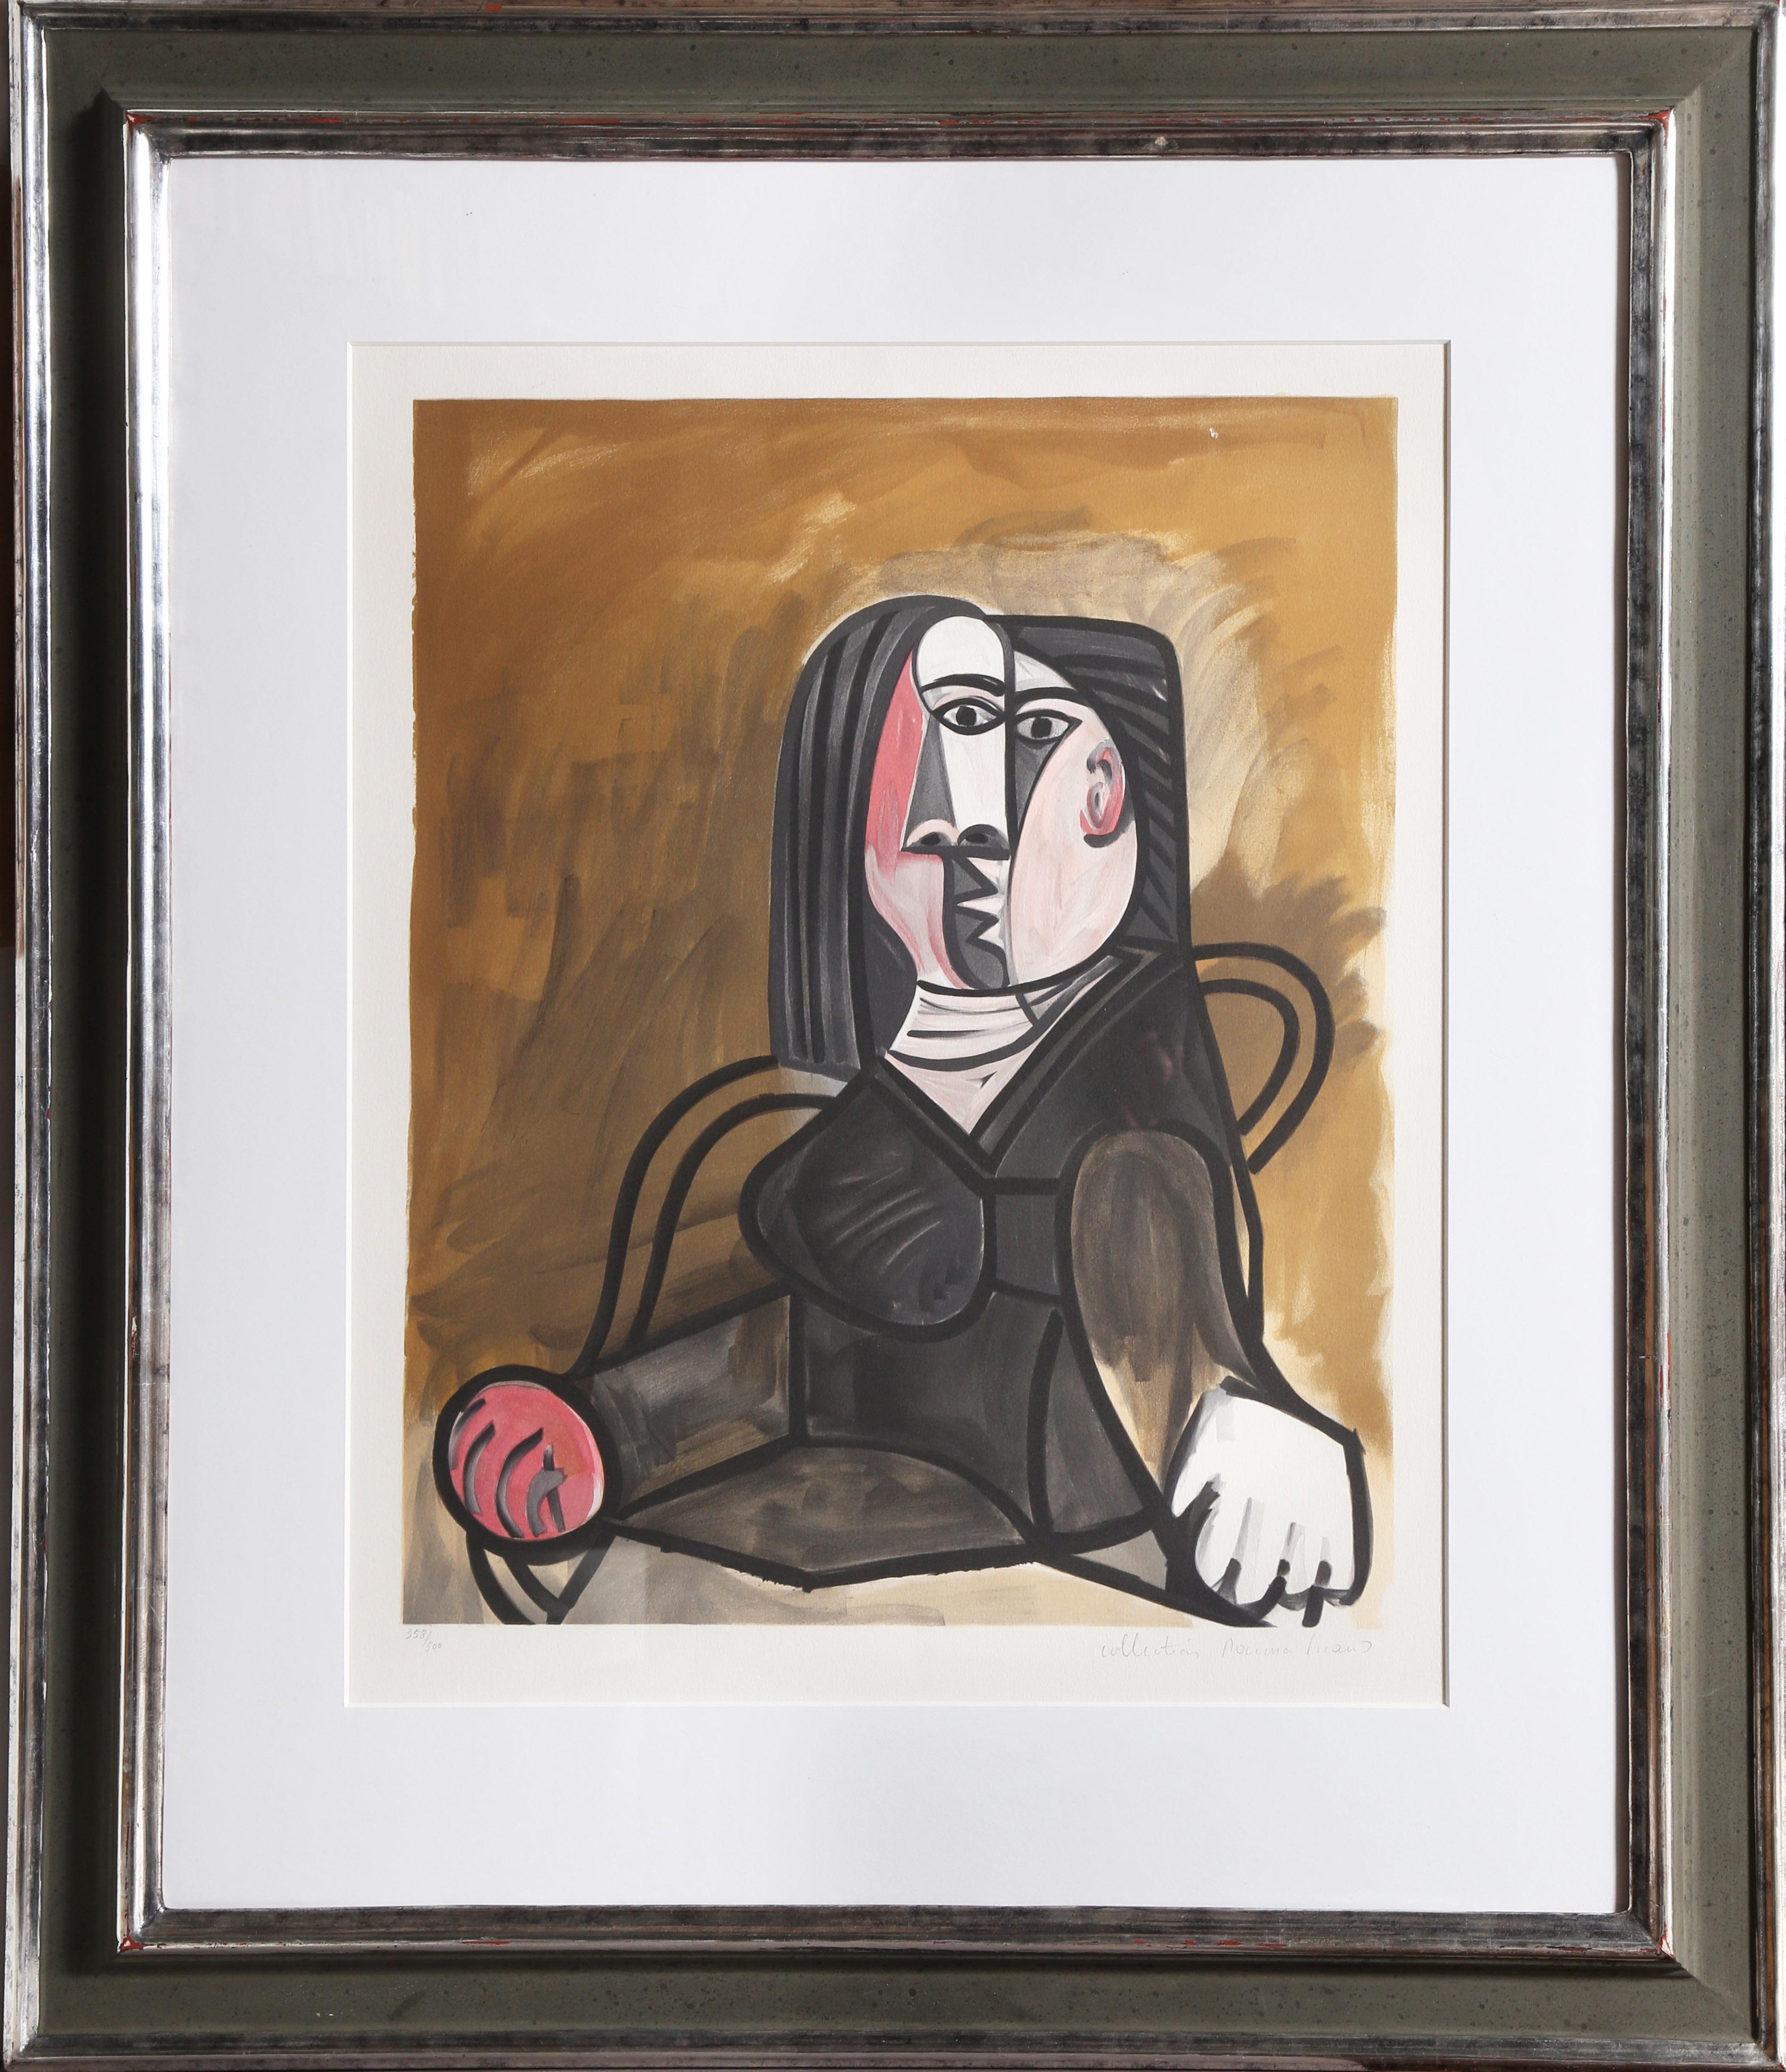 Die in einem Sessel sitzende Frau auf diesem Bild von Pablo Picasso erscheint fragmentiert und unzusammenhängend, da der Künstler mehrere Perspektiven integriert hat. Eine Lithographie aus der Nachlasssammlung Marina Picasso nach dem Kunstwerk